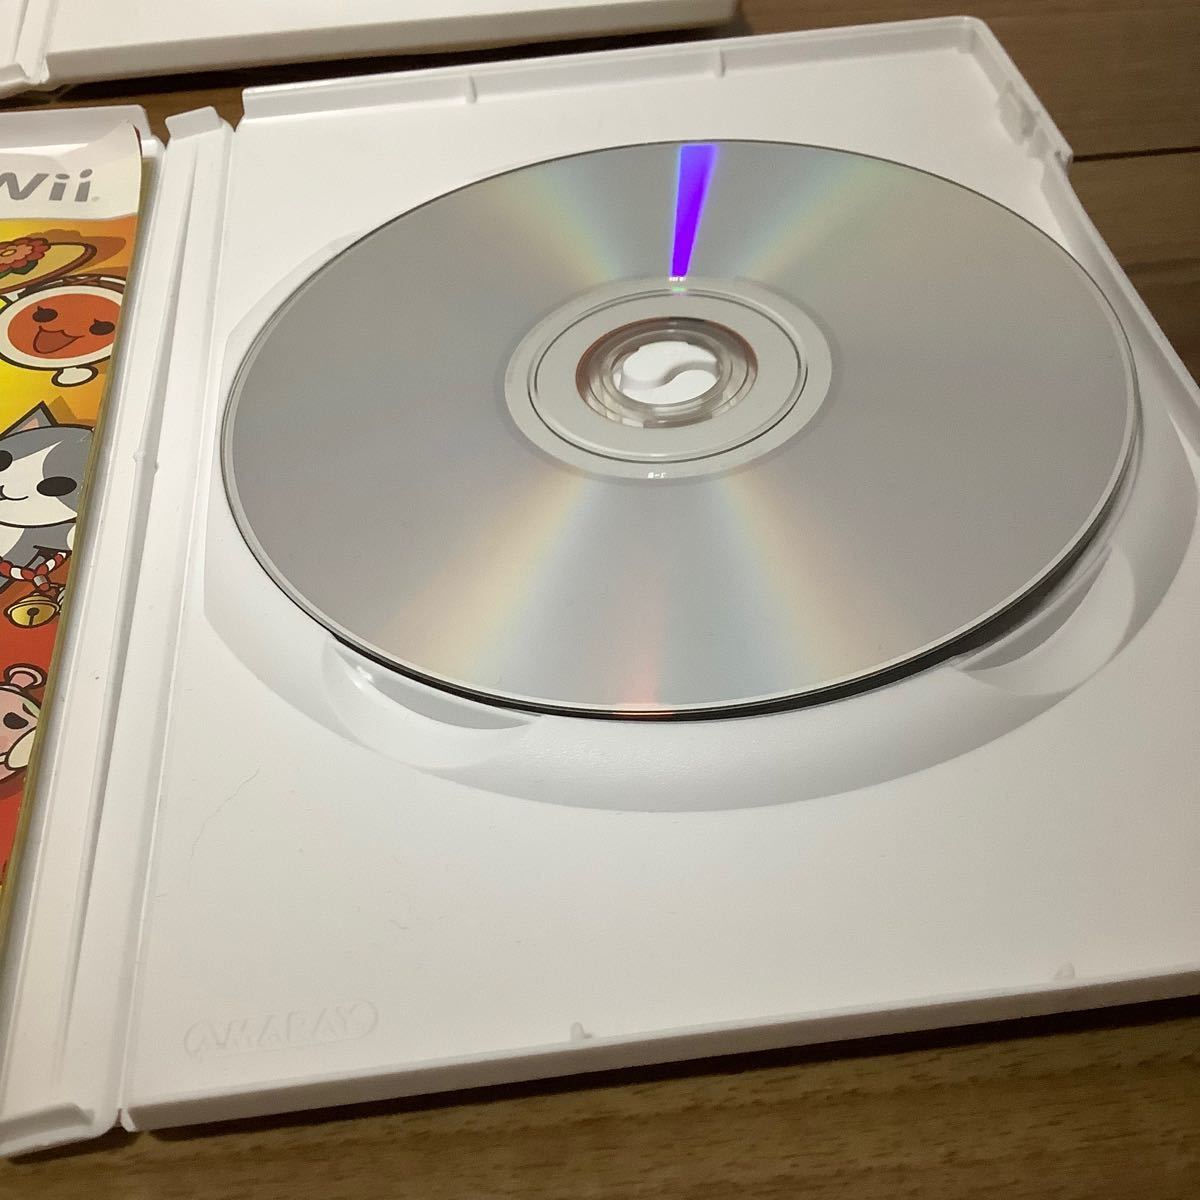 Nintendo Wii RVL-S-WD 太鼓の達人　タタコン　マリオパーティ　スマブラ